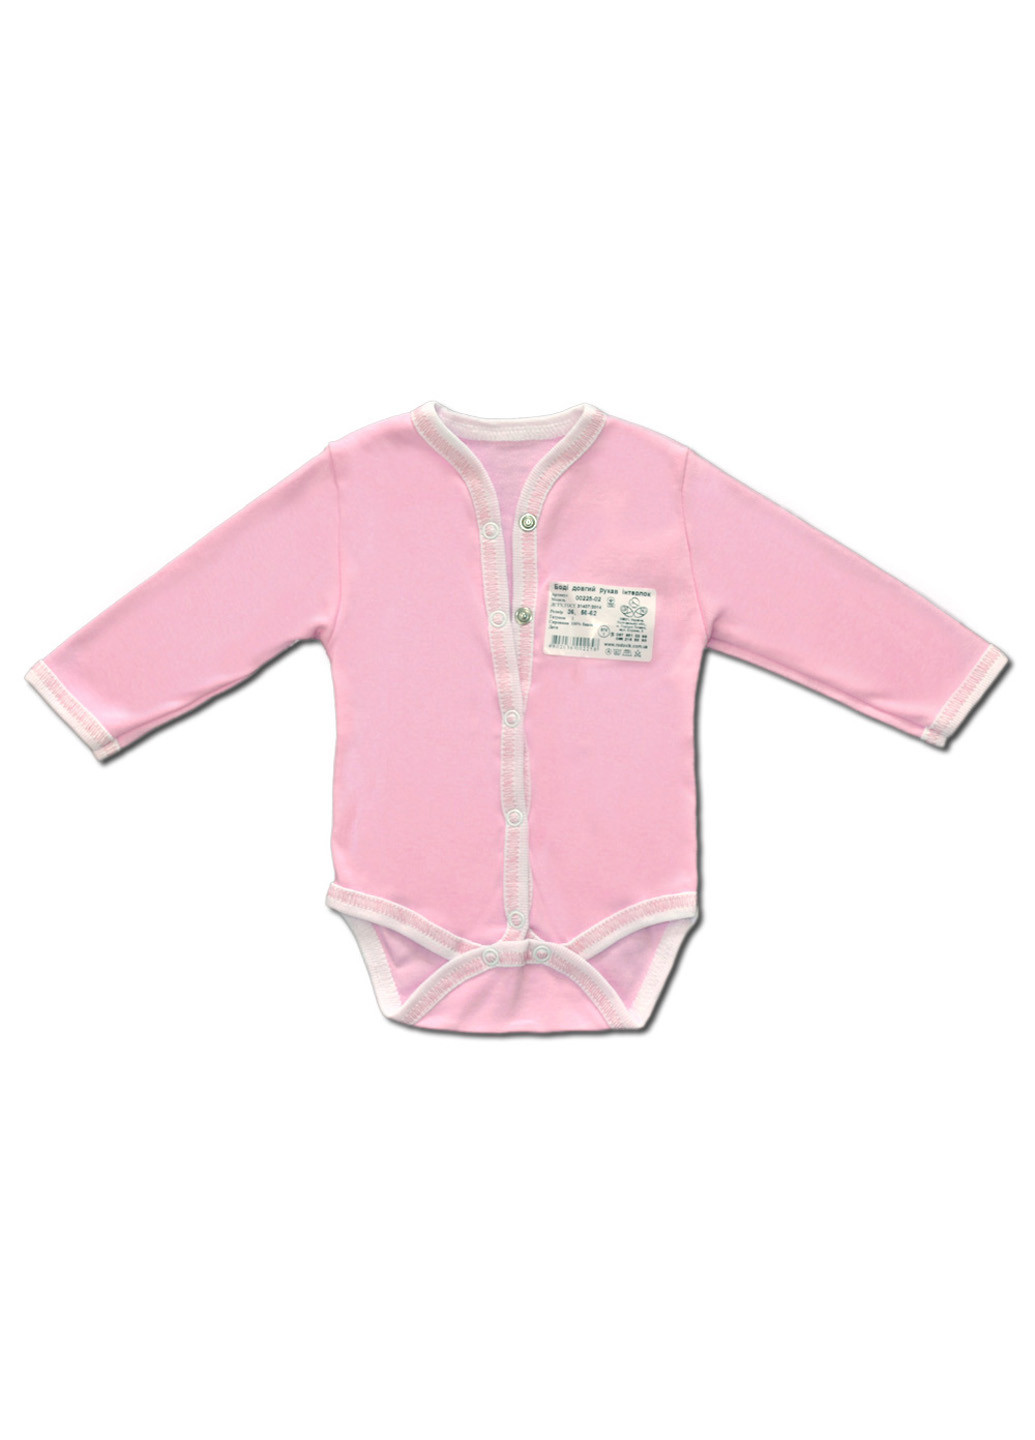 Розовый демисезонный комплект одежды для малышей №8 (7предметов) тм коллекция капитошка розовый Родовик комплект 08-РК